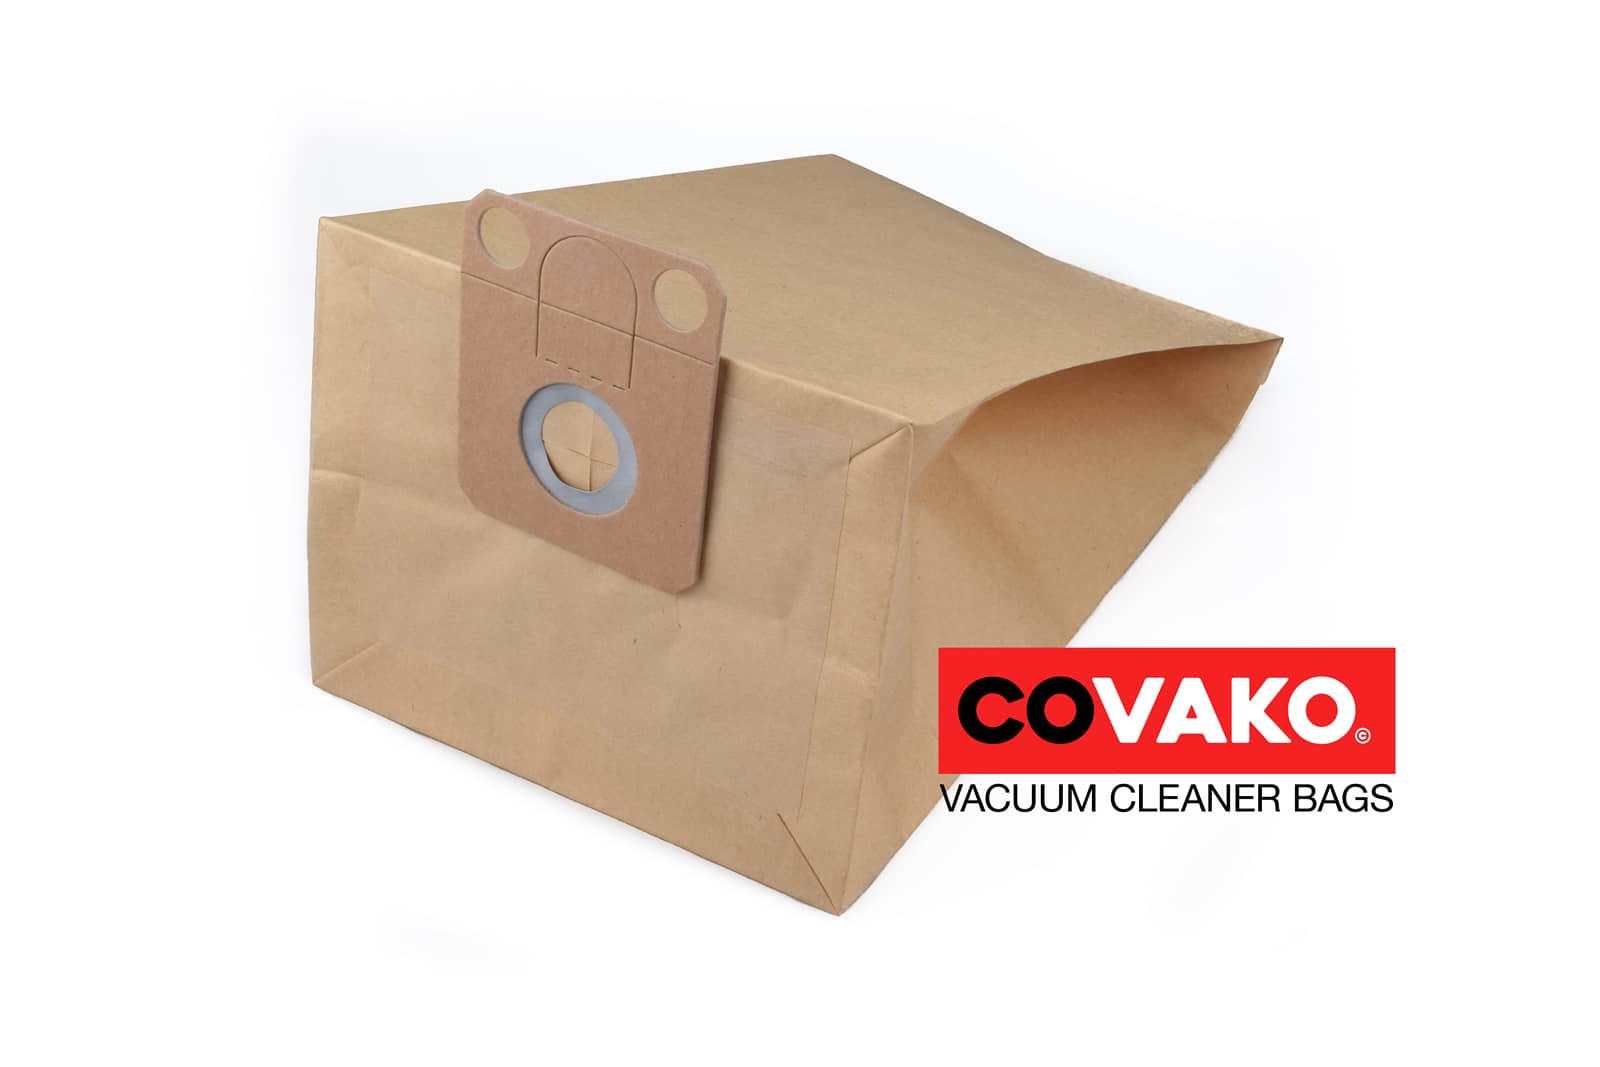 Alto VP 300 / Paper - Alto vacuum cleaner bags